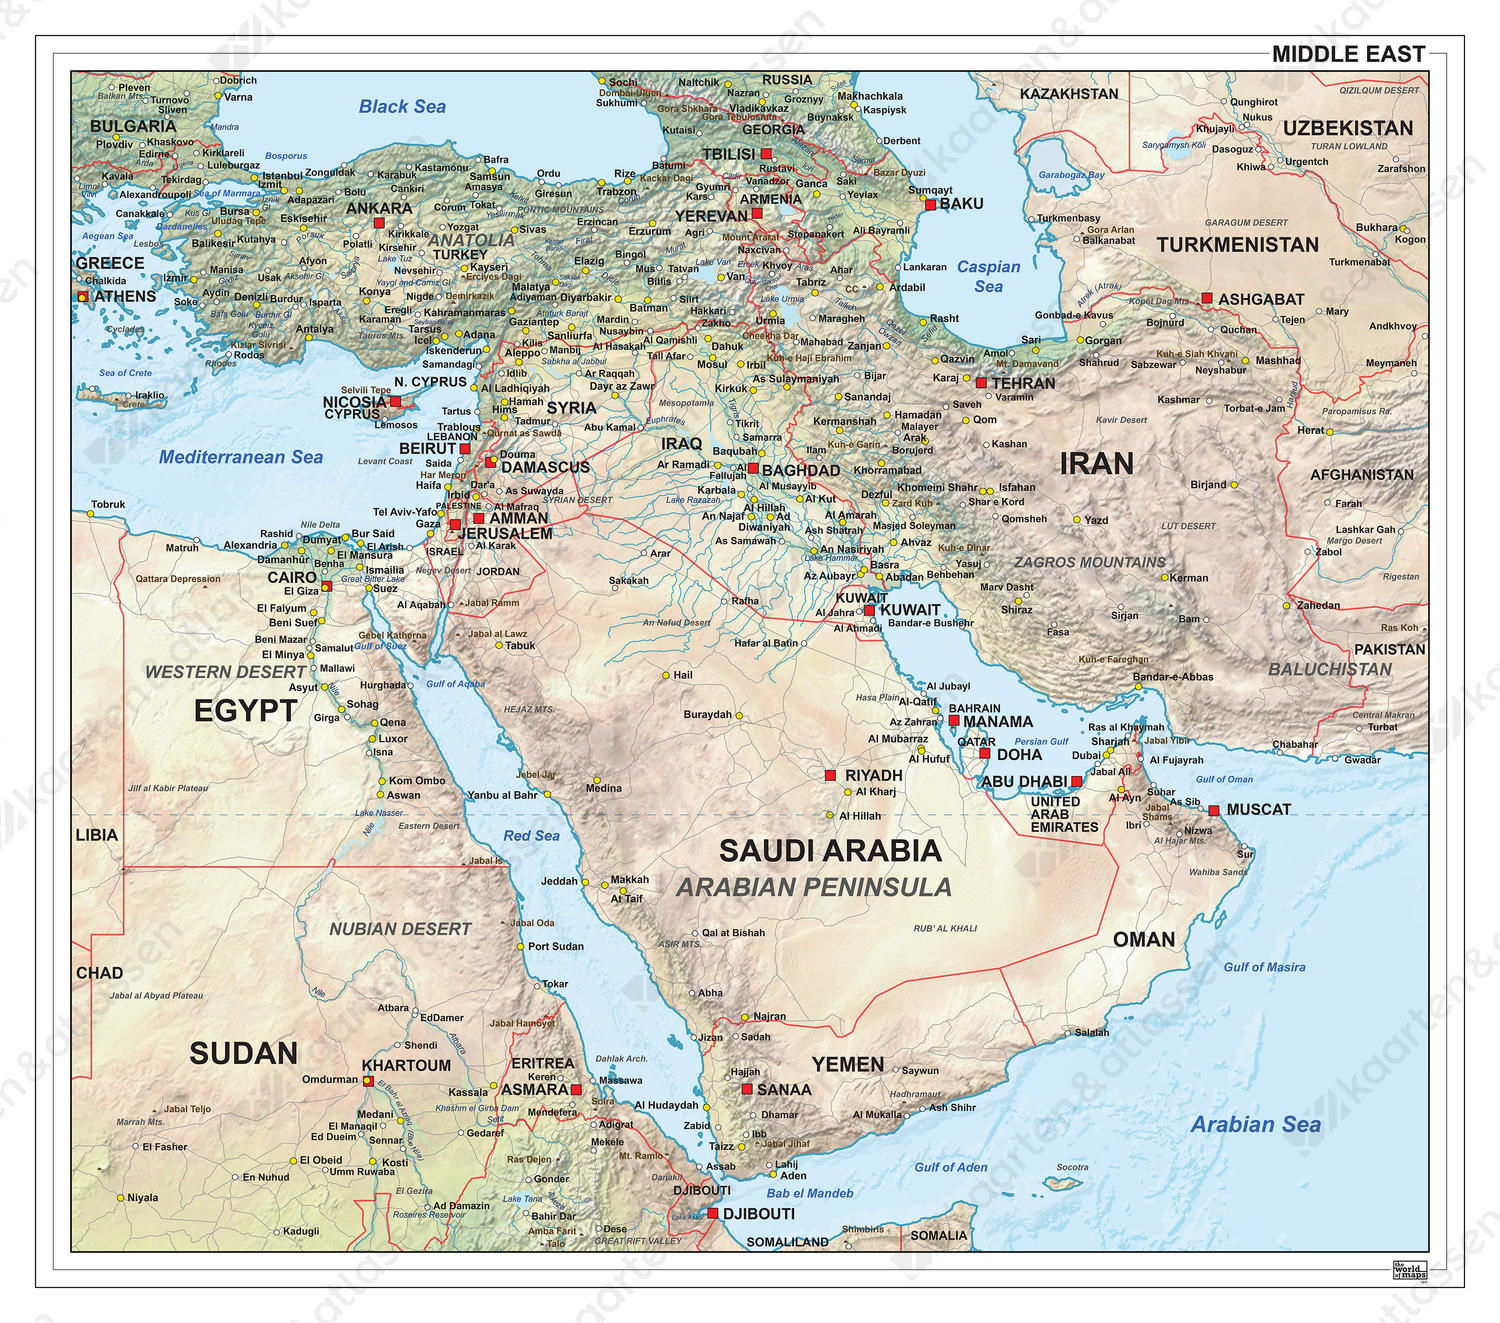 Midden Oosten Natuurkundig 1311 | Kaarten En Atlassen.Nl